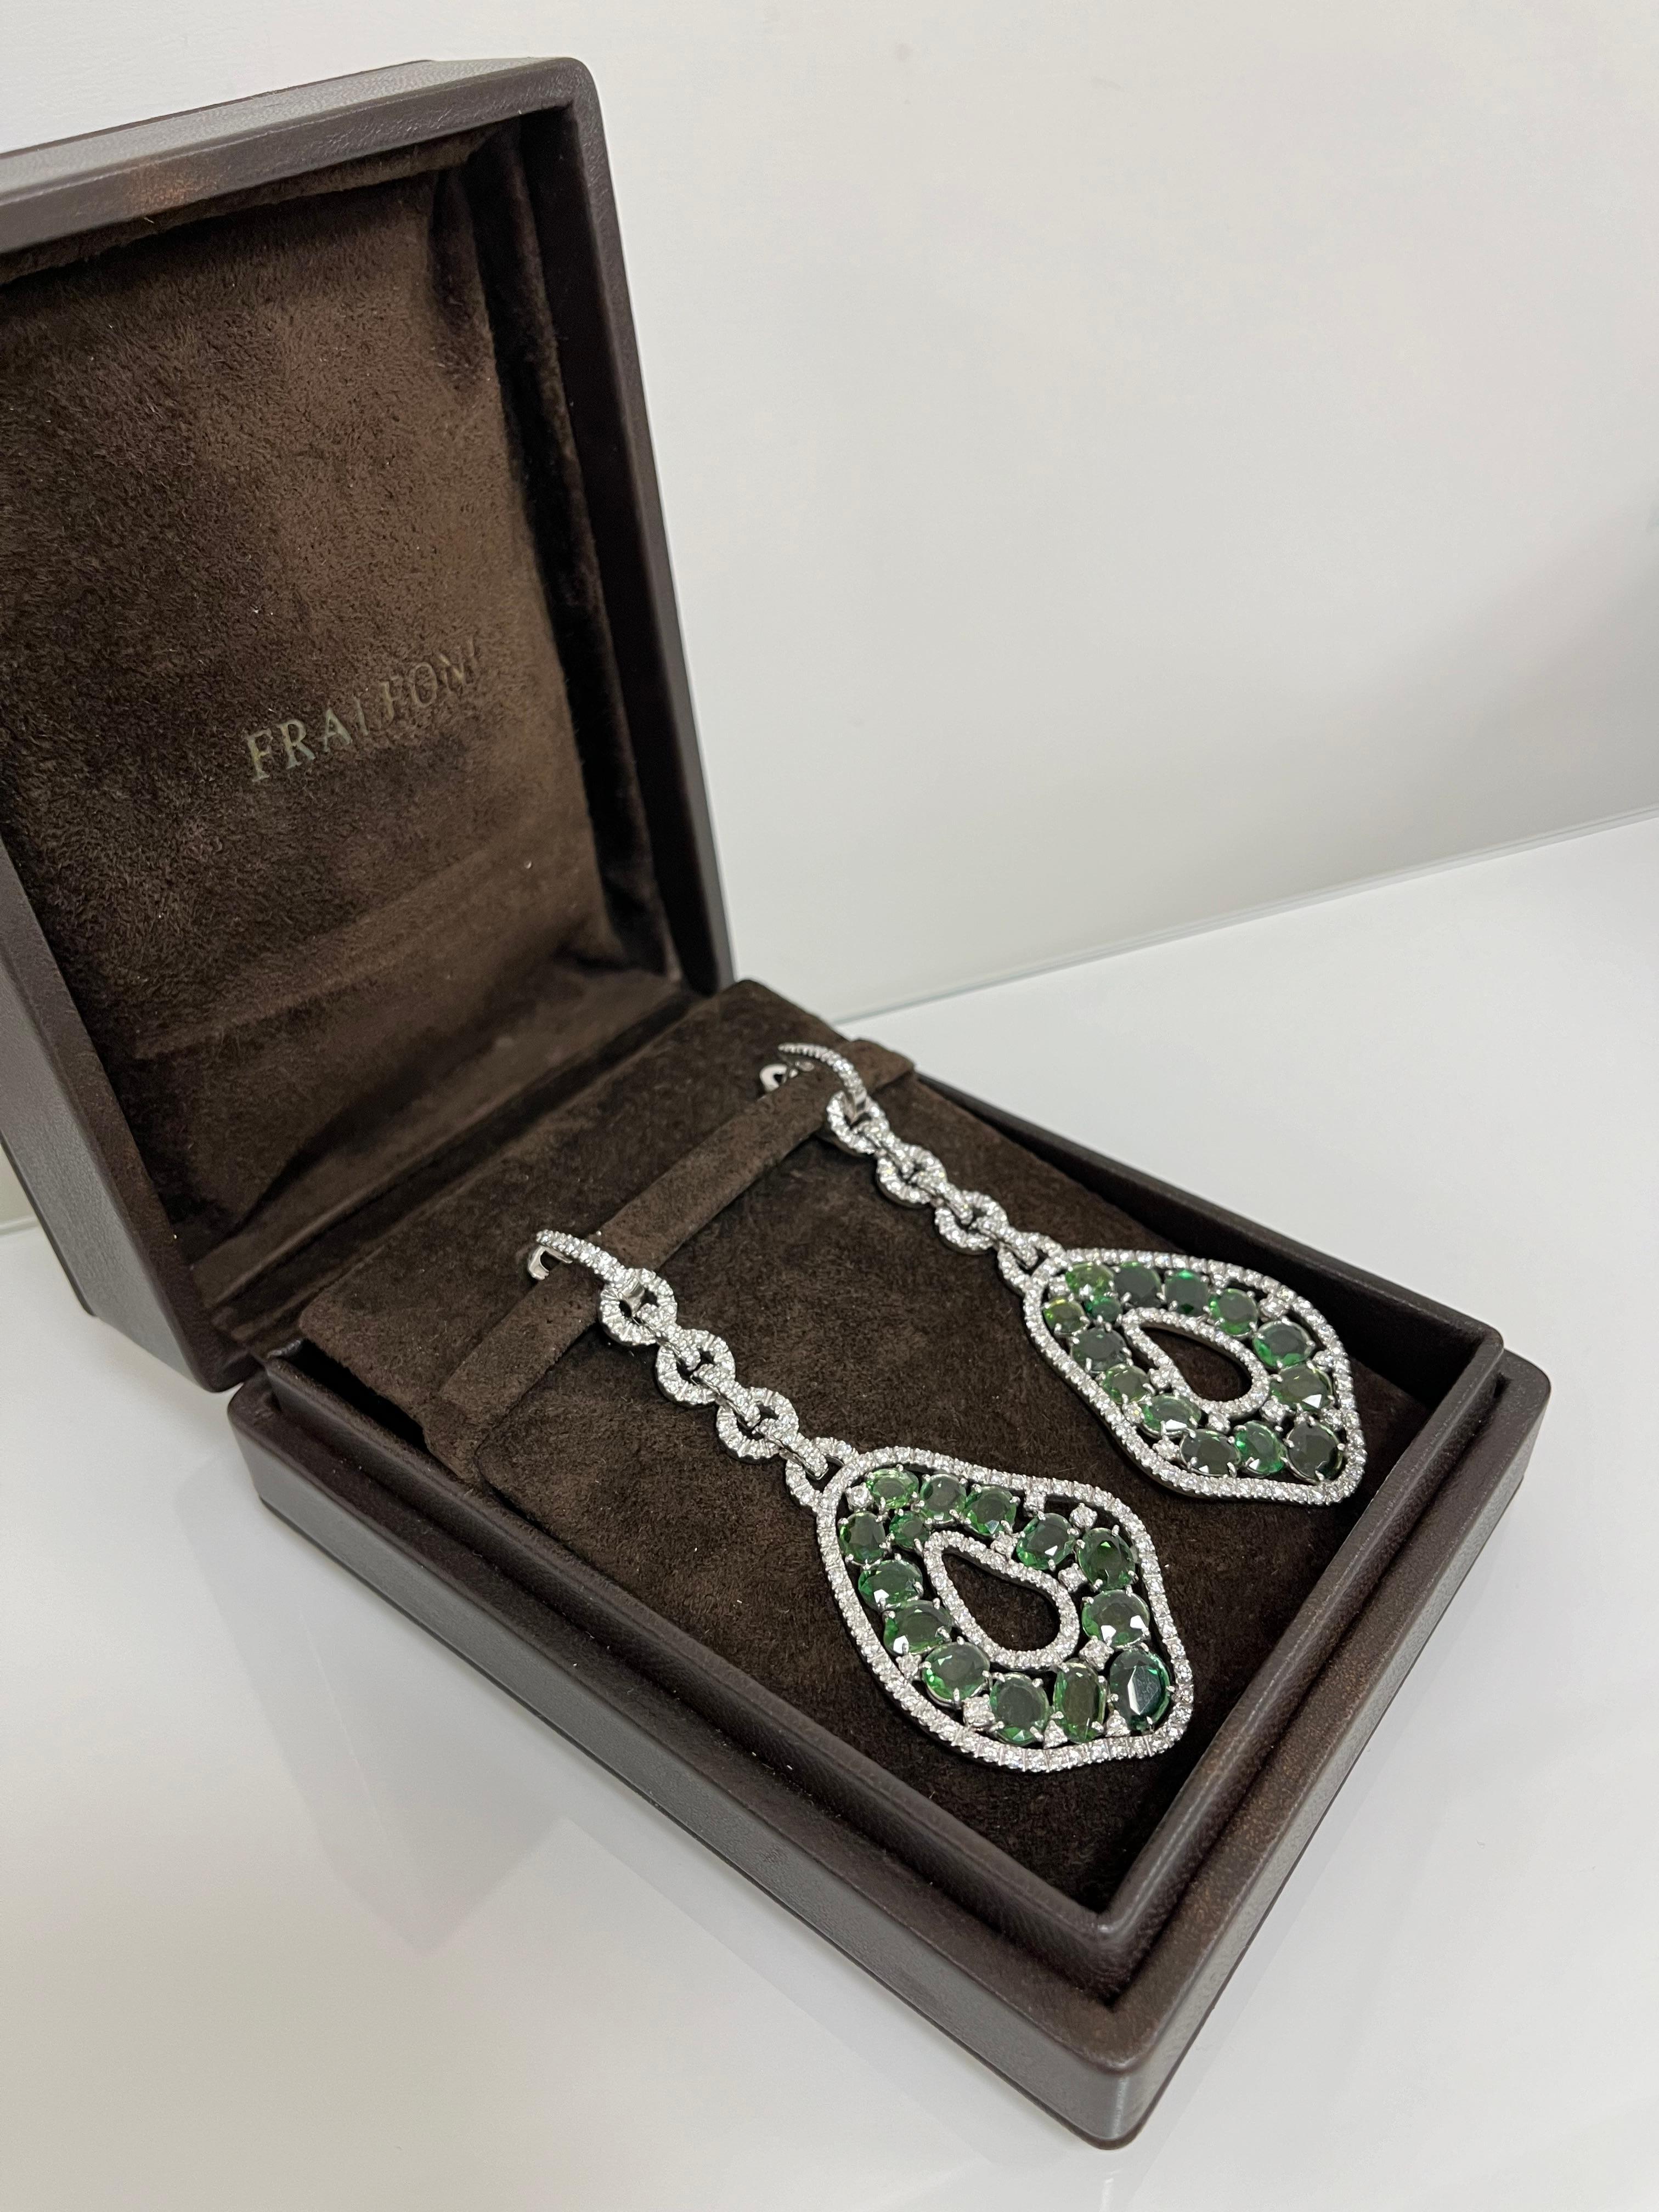 Fraleoni 18 Kt. White Gold Diamonds Green Tourmalines Earrings For Sale 2